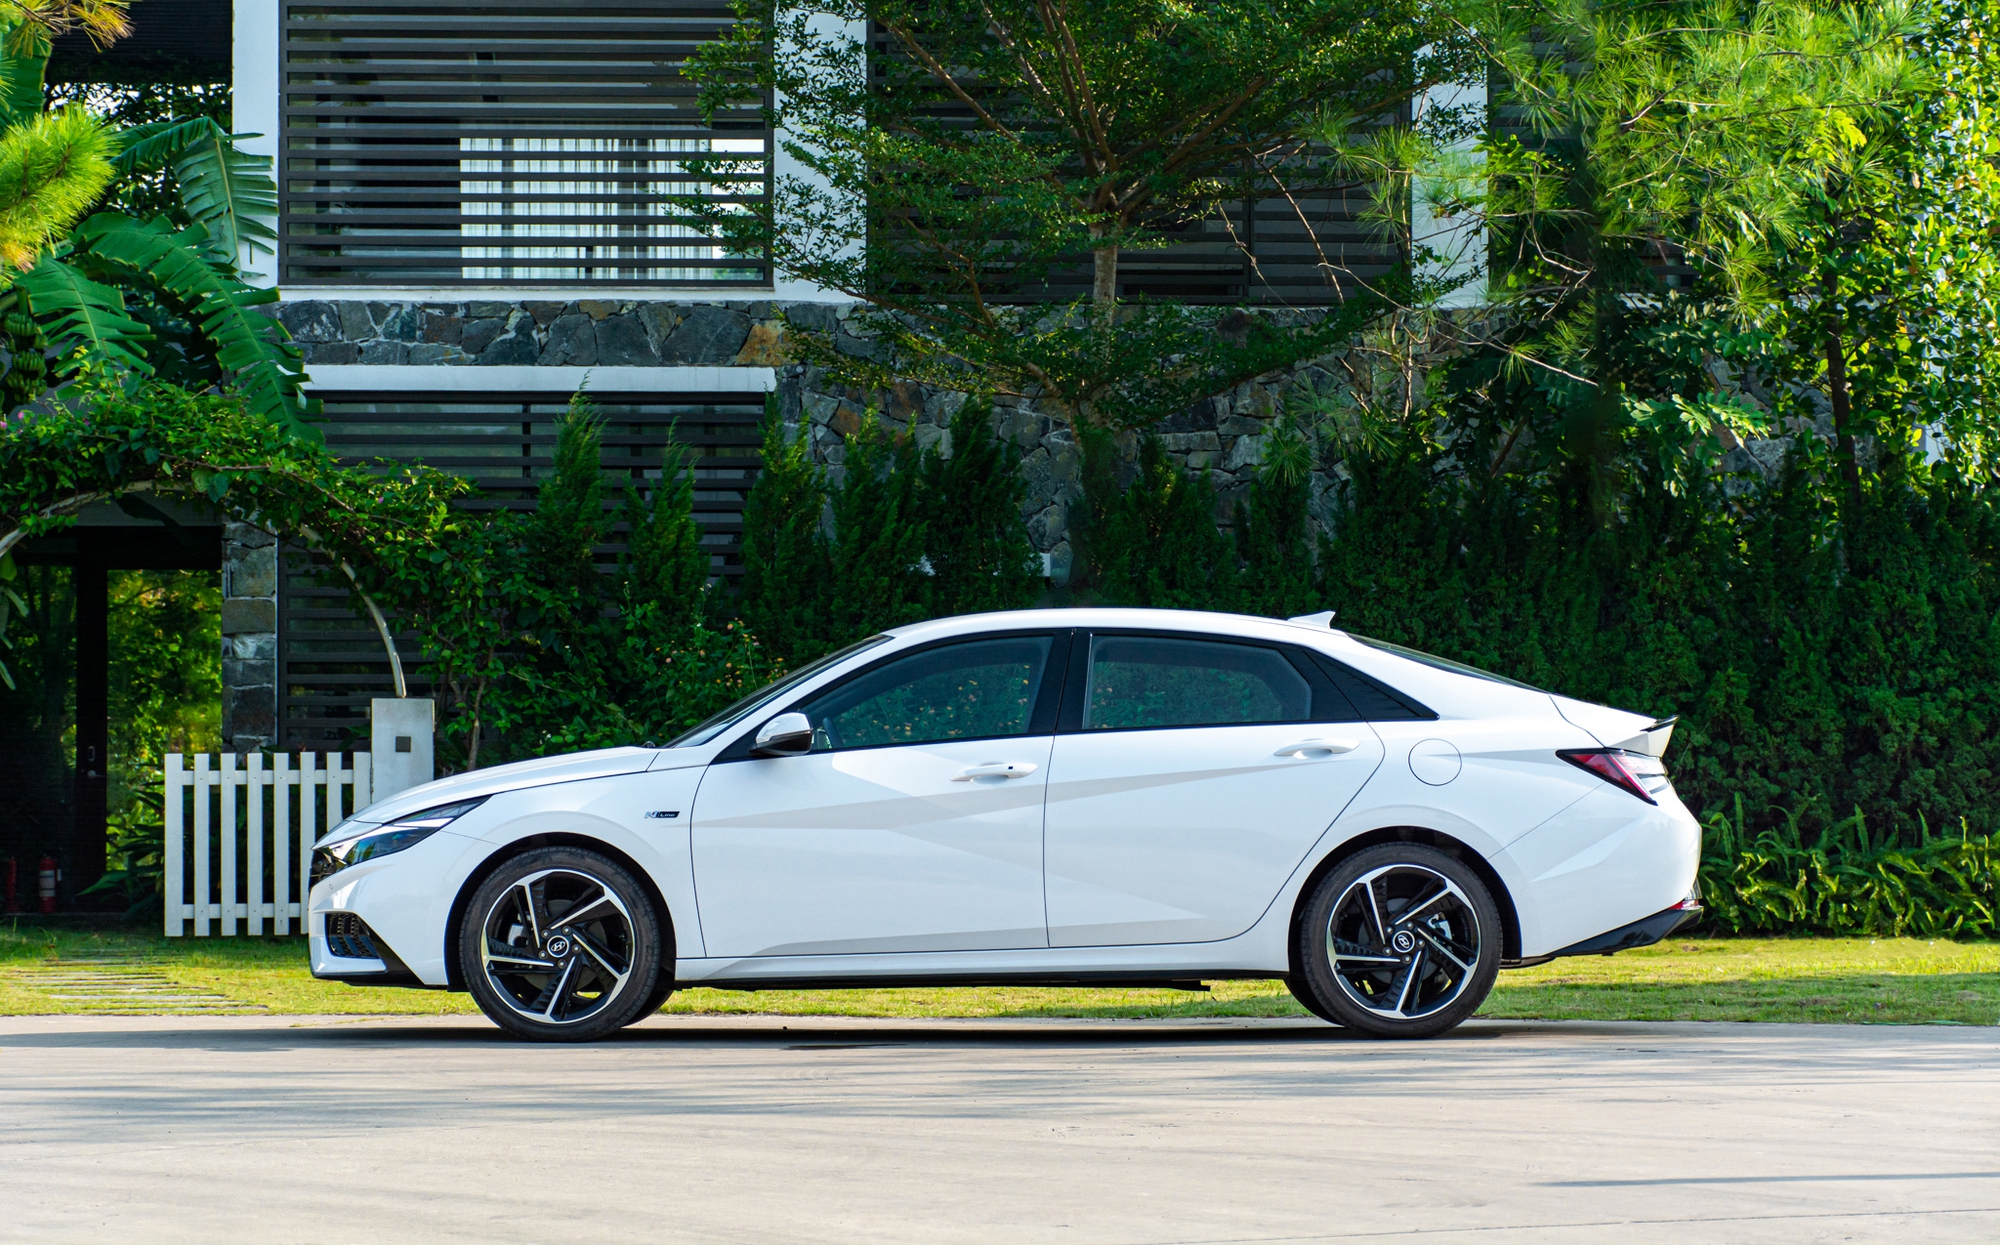 Đánh giá Hyundai Elantra N Line: Xe thể thao giá 799 triệu, mạnh và cảm xúc hơn Civic RS, còn điểm yếu công nghệ - Ảnh 4.